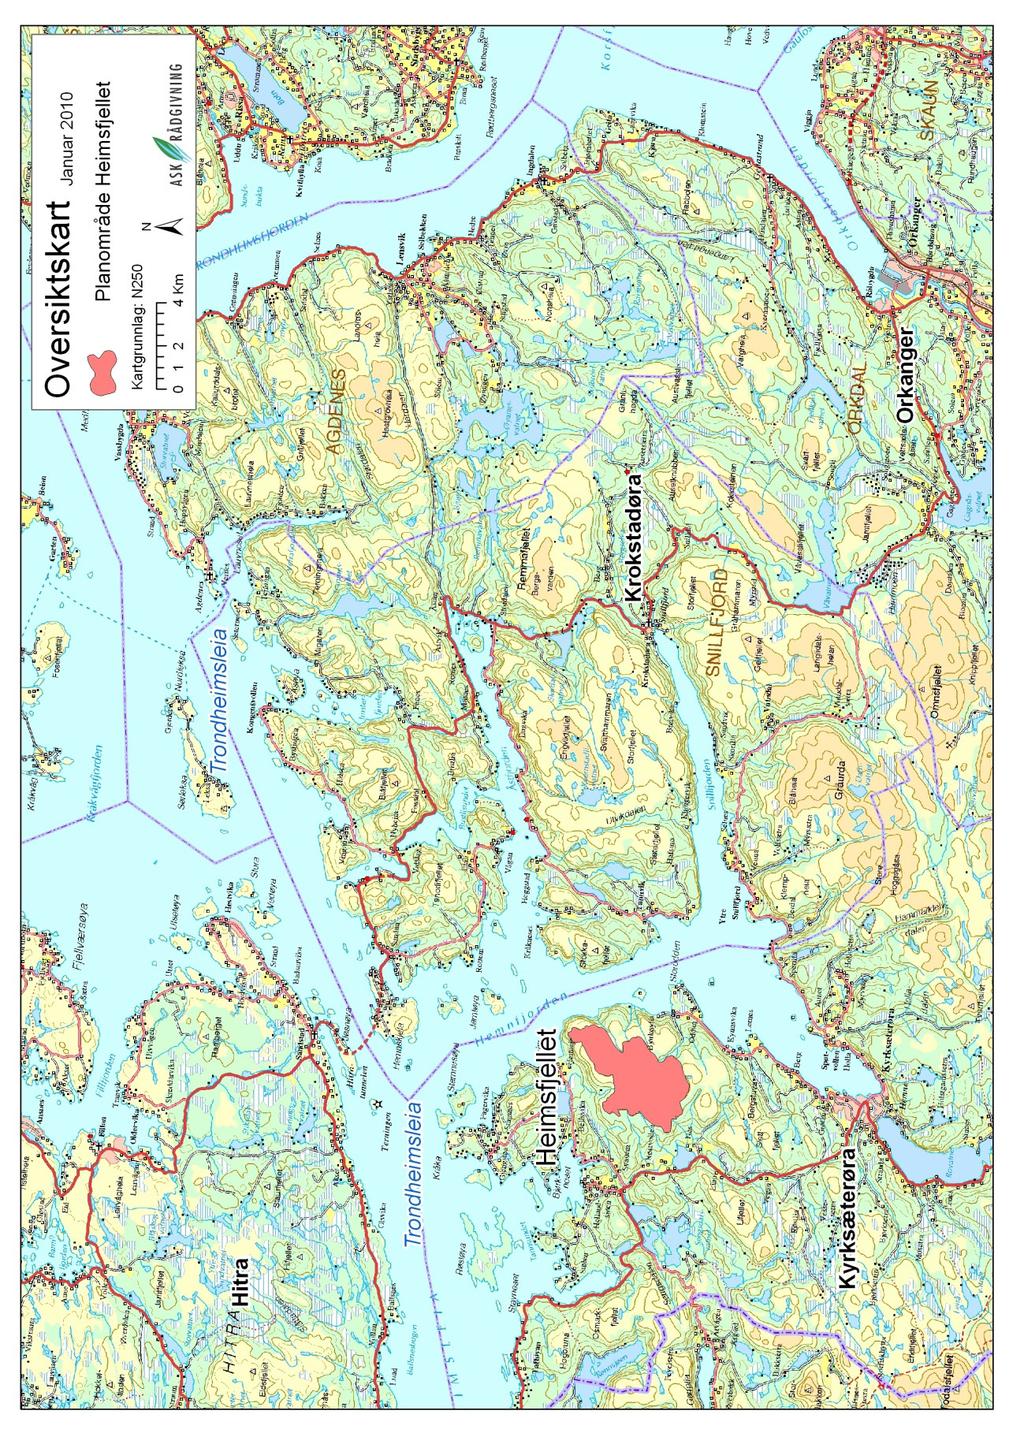 Heimsfjellet vindpark Figur 3: Kartet viser Heimsfjellet